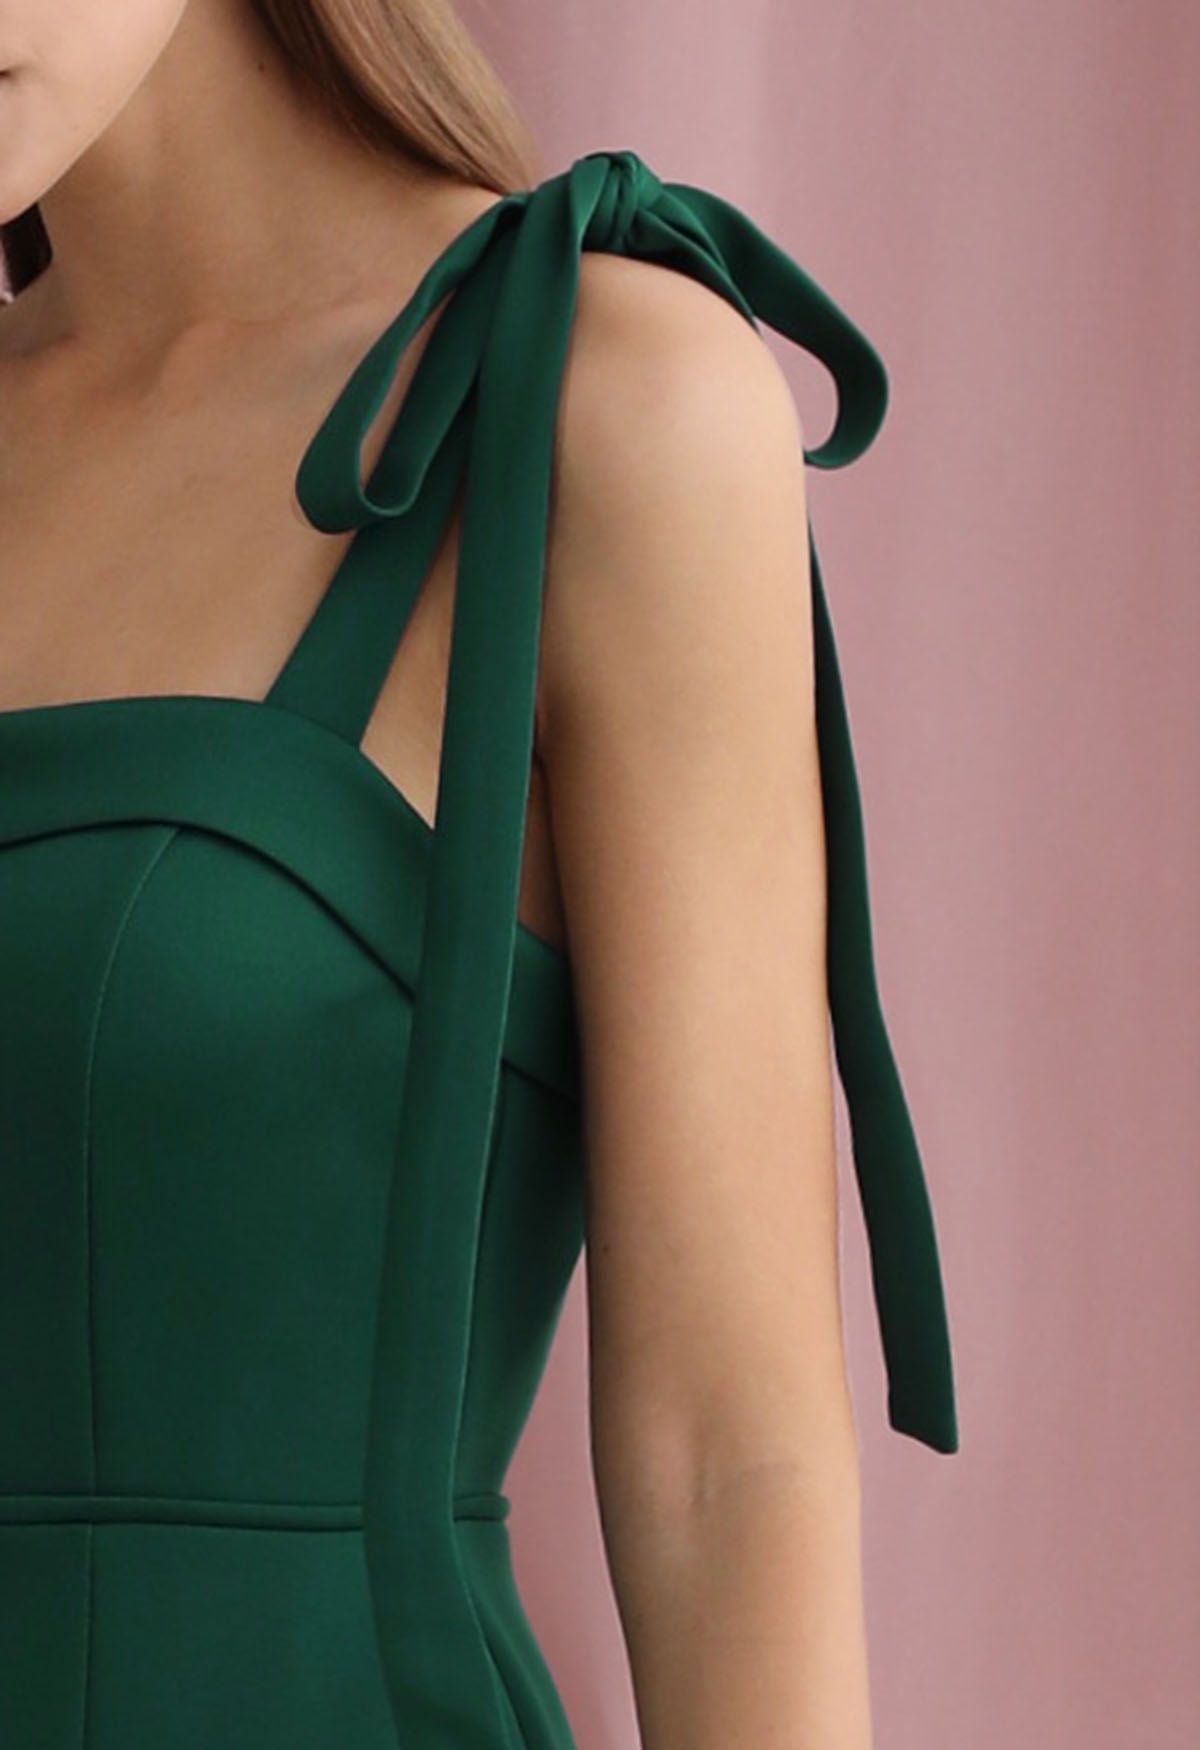 Tie-Shoulder High Slit Maxi Gown in Dark Green